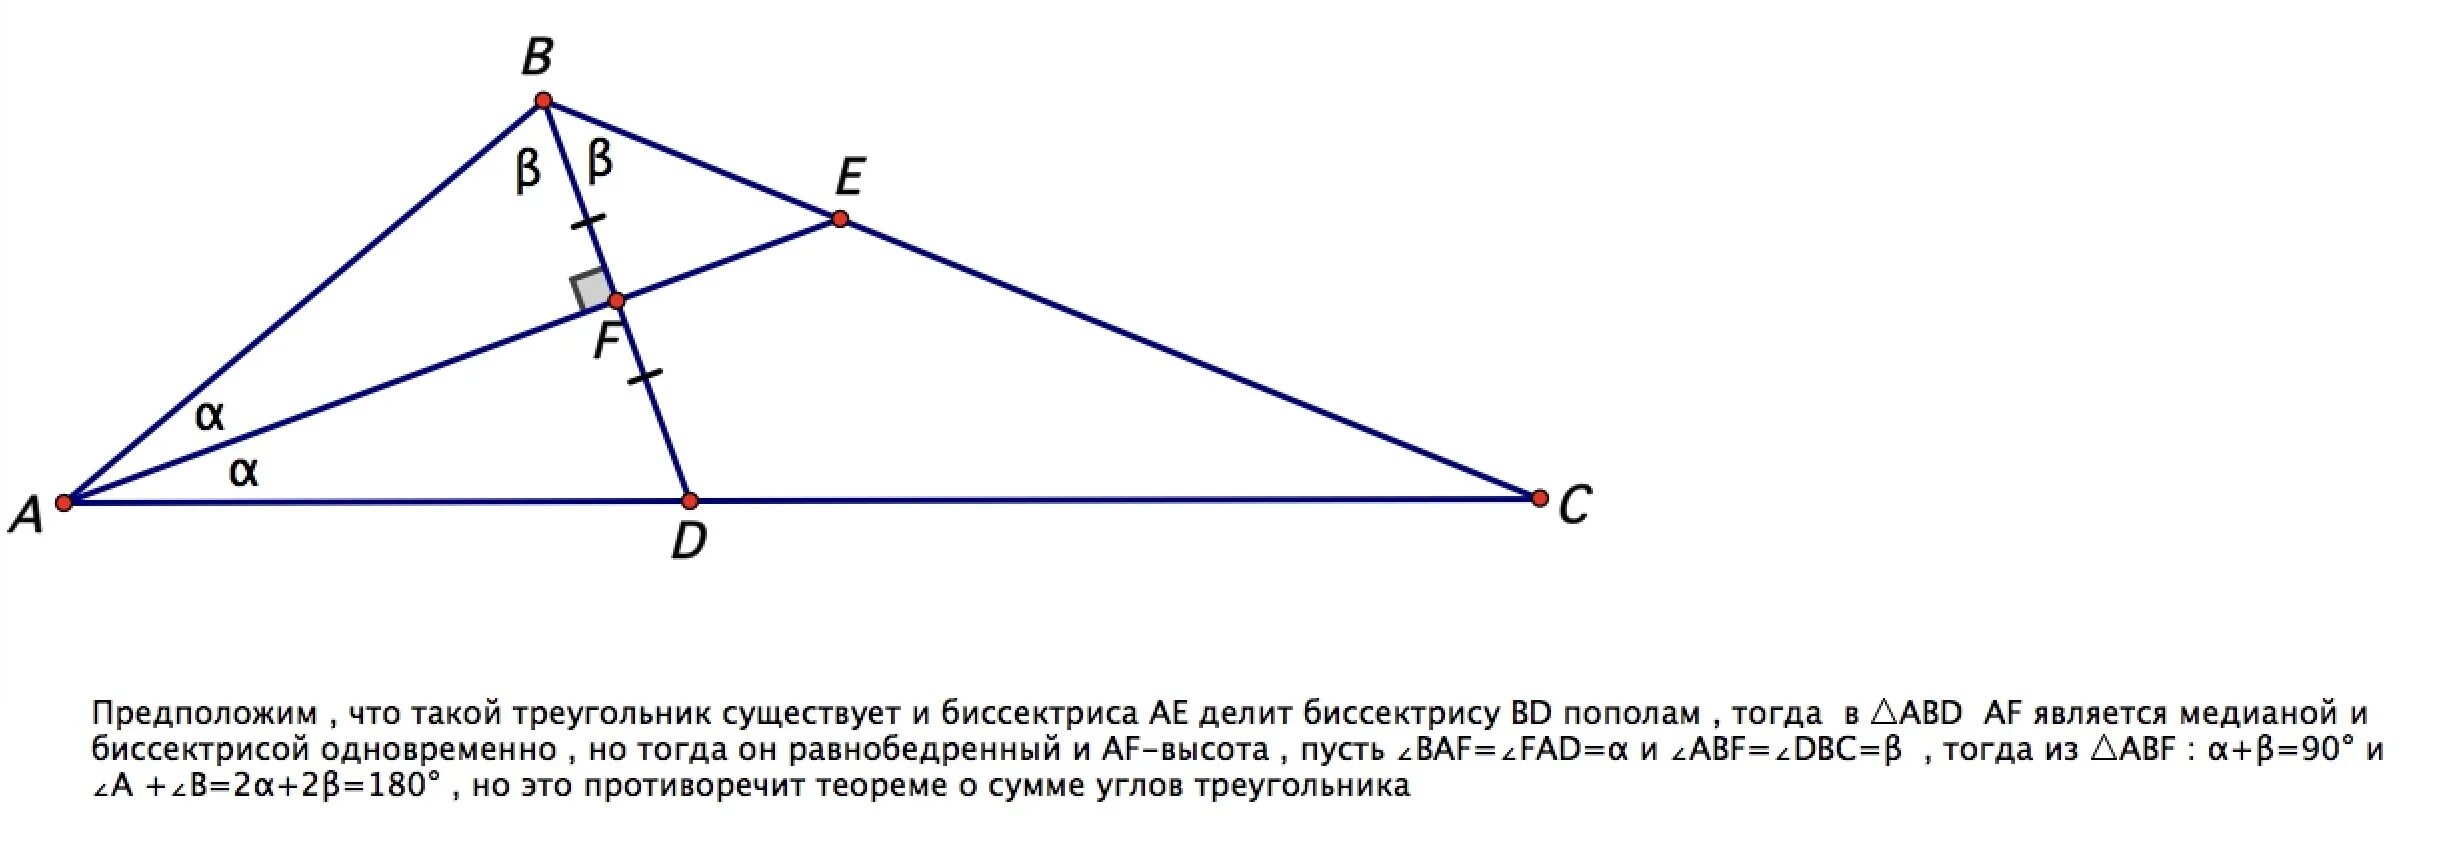 Биссектриса. Биссектриса треугольника. Биссектриса делит треугольник пополам. Биссектриса треугольника не может делить пополам его высоту. Любая биссектриса треугольника делит его пополам